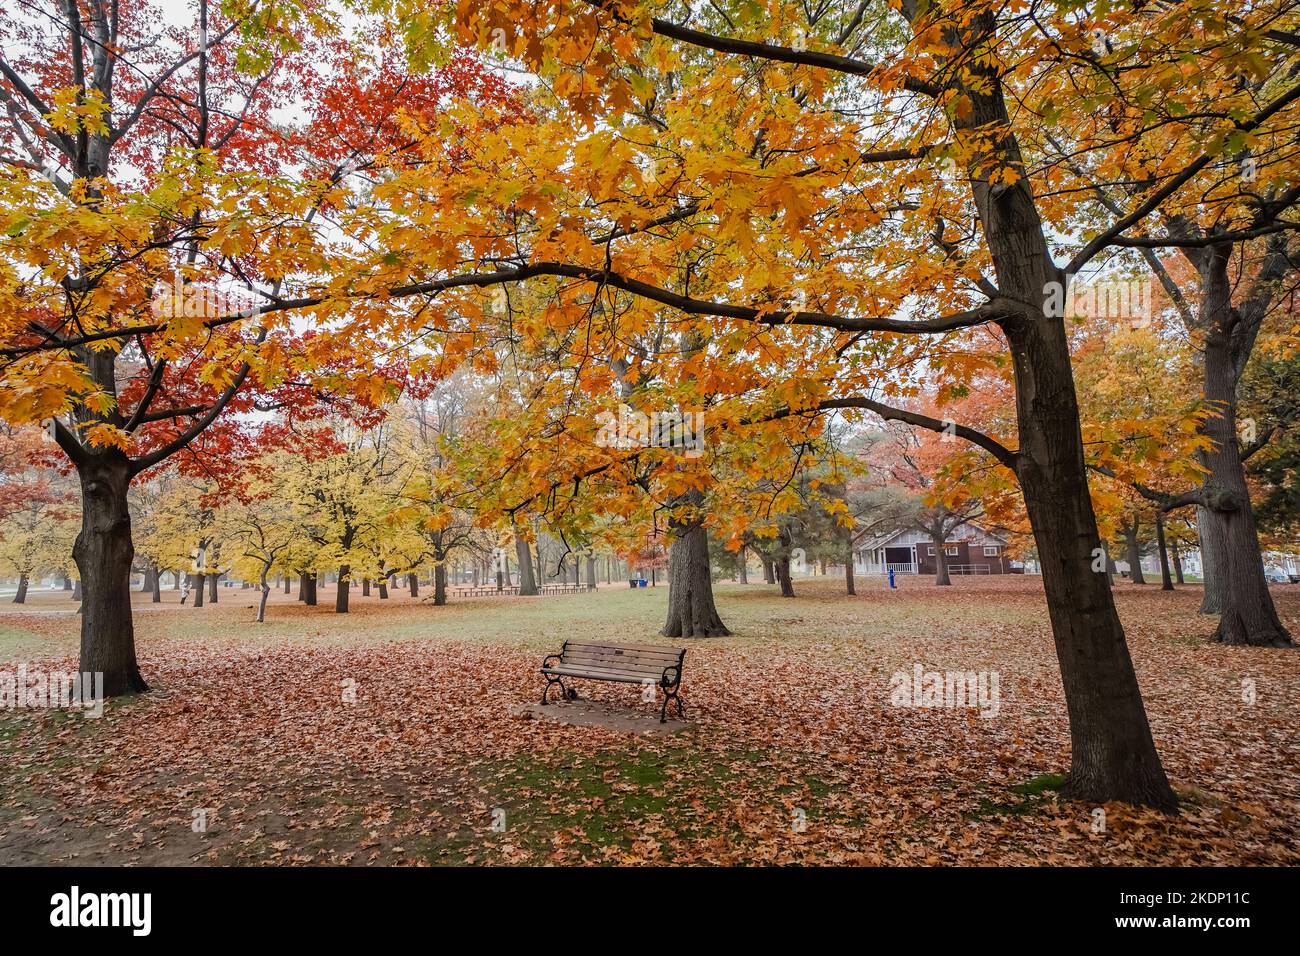 Banc vide à l'intérieur d'un parc entouré de feuilles d'arbre jaune-orange-rouge pendant l'assaisonnement d'automne en Amérique du Nord des états-unis ou au canada Banque D'Images